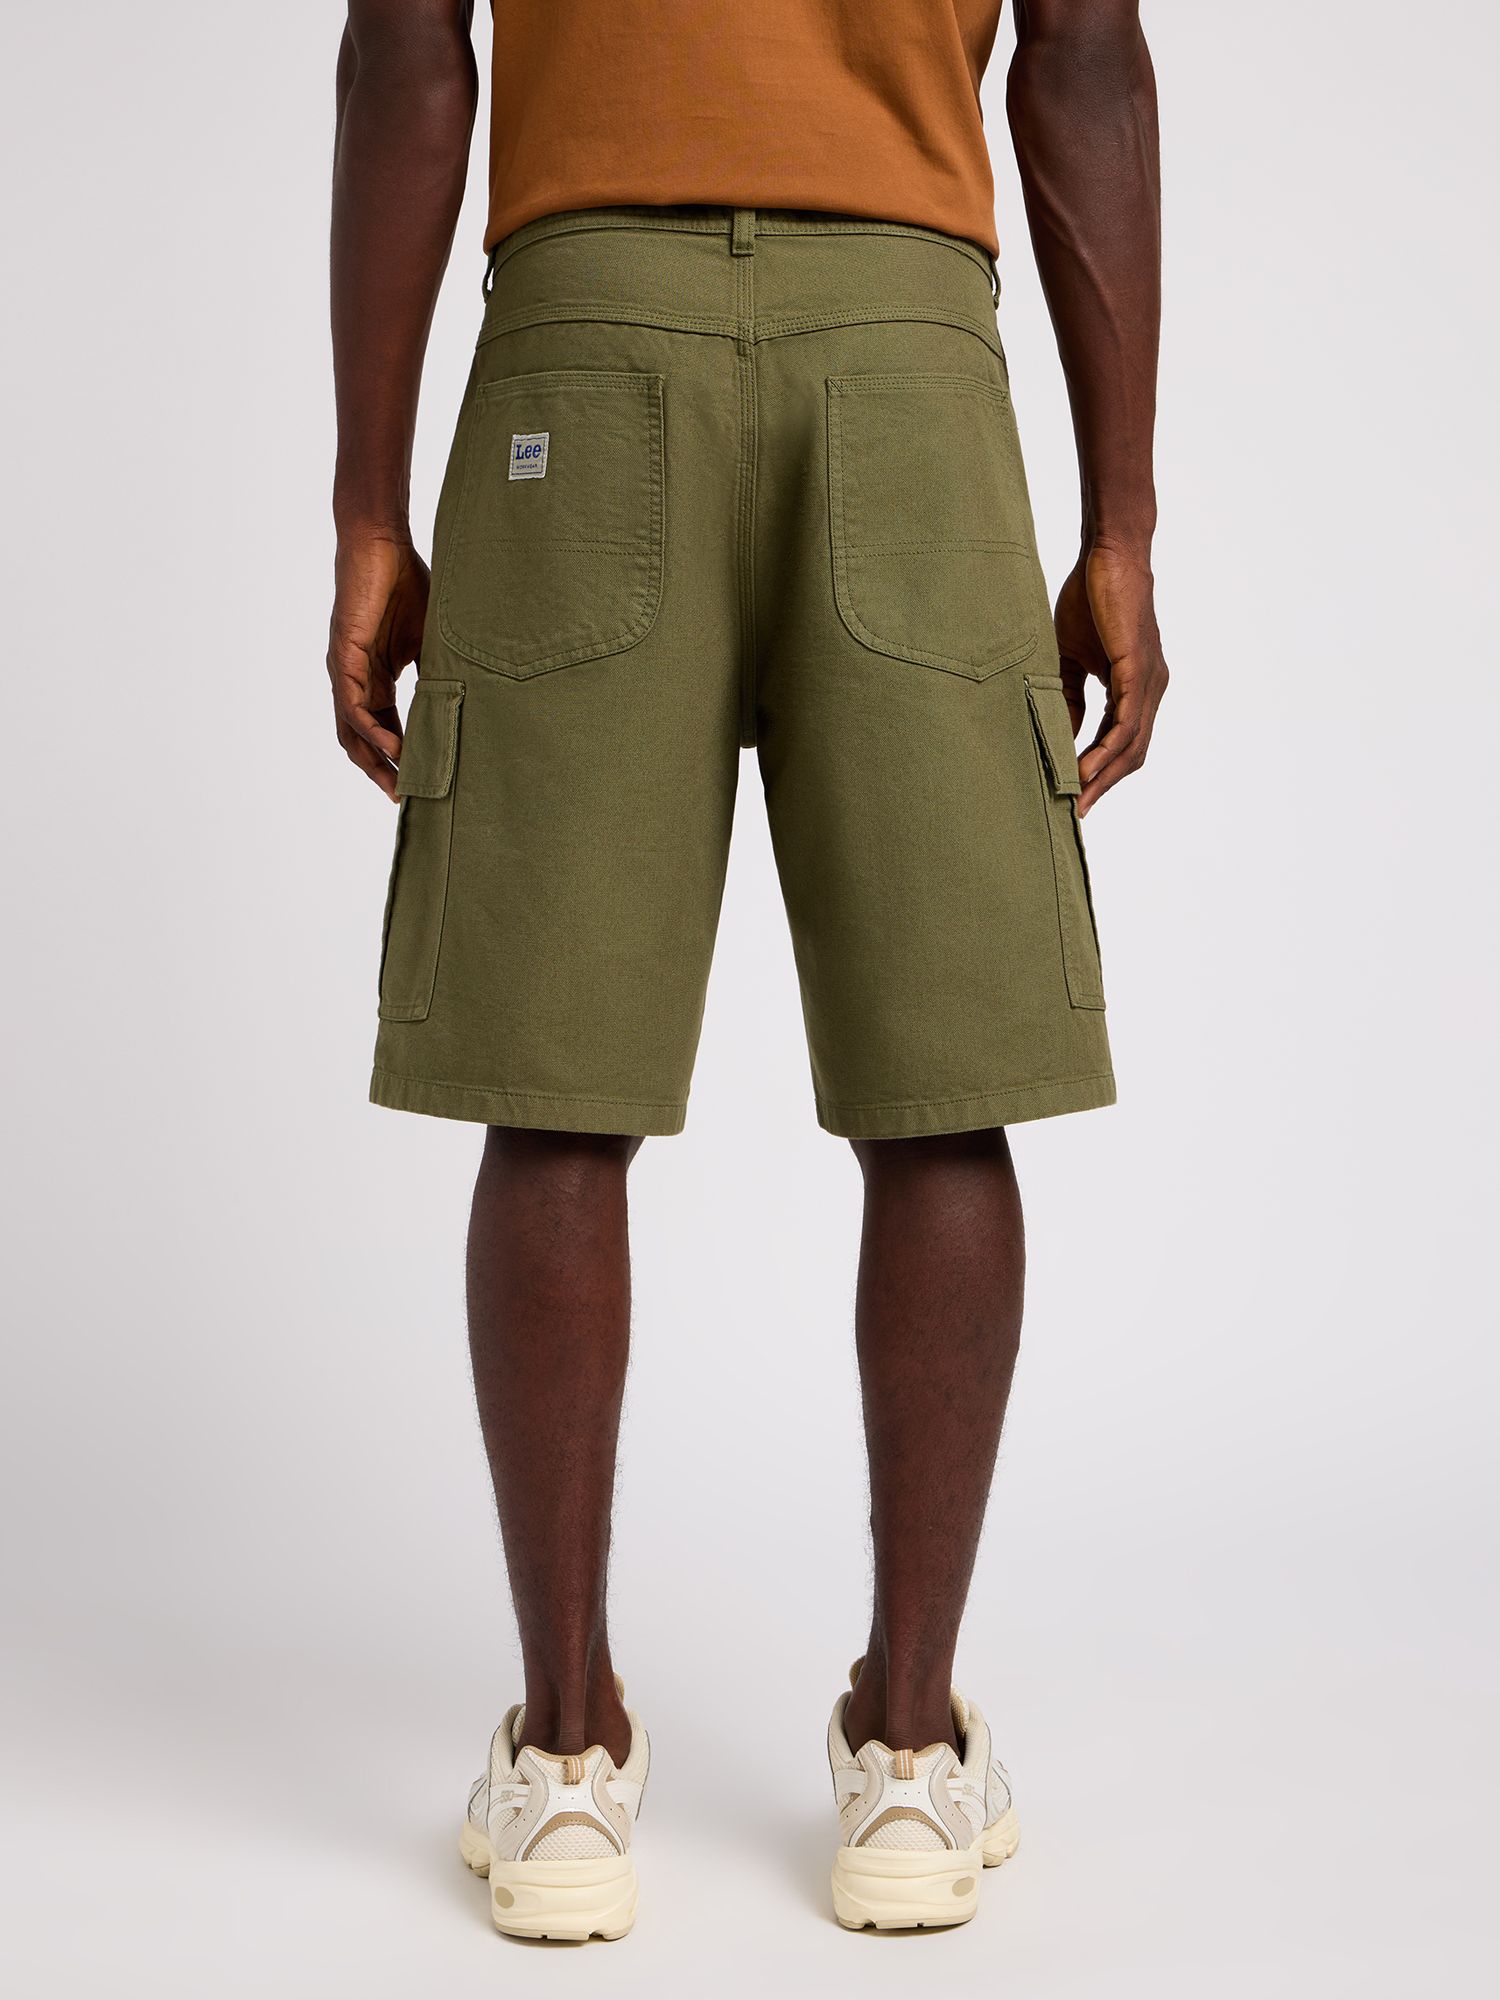 Lee Regular Fit Cargo Shorts, Olive, 30R